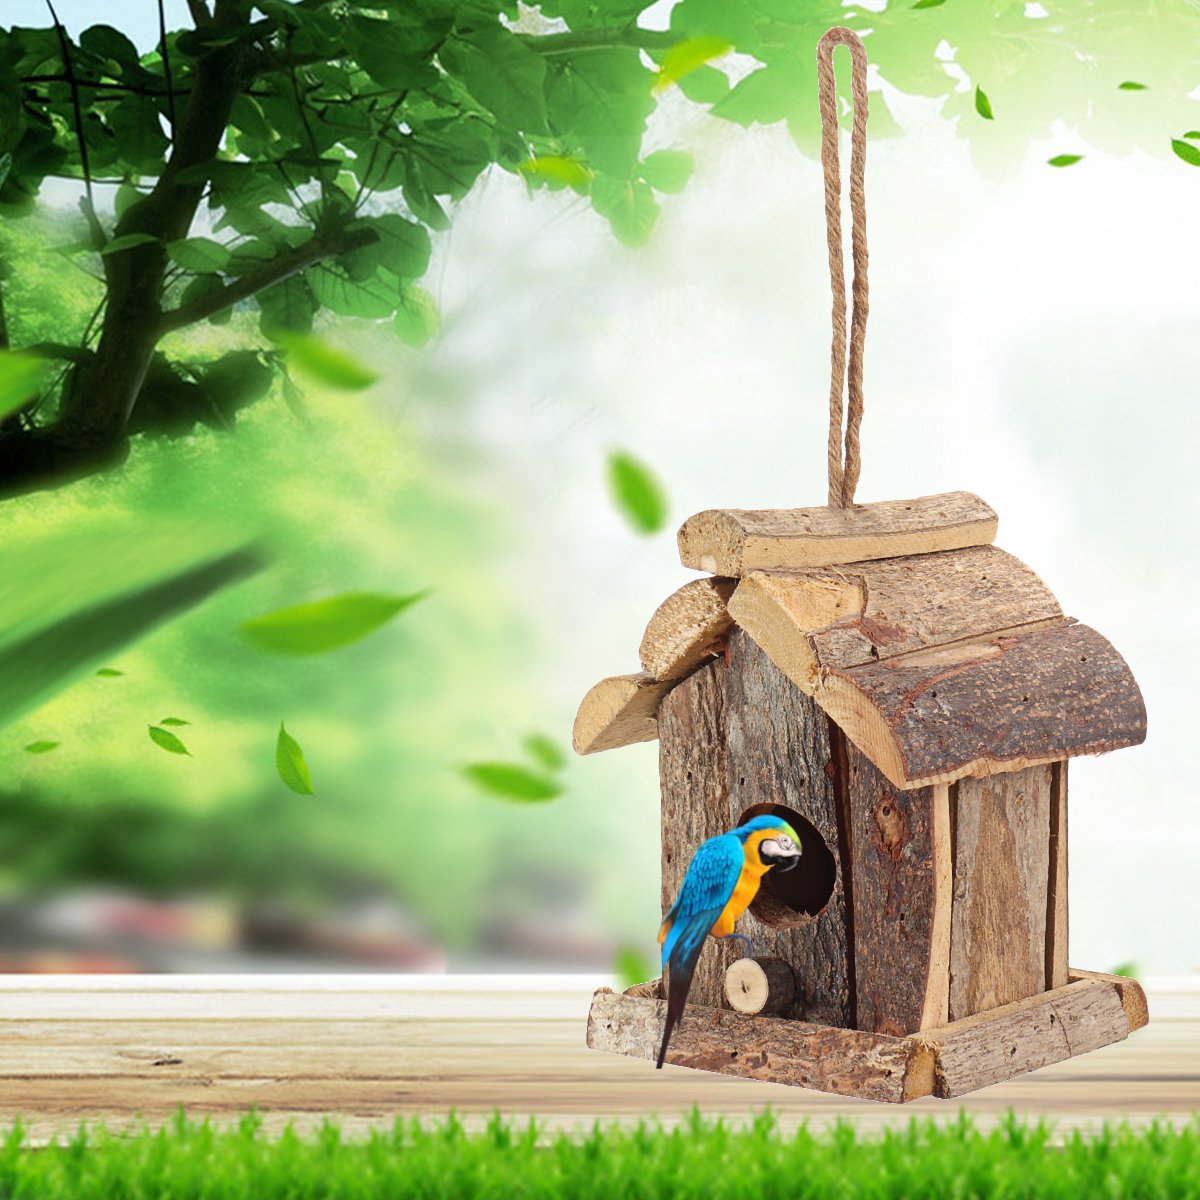 Vintage-Wooden-Bird-House-Nesting-Box-Small-Wild-Birds-Nest-Home-Garden-Decoration-1725292-5